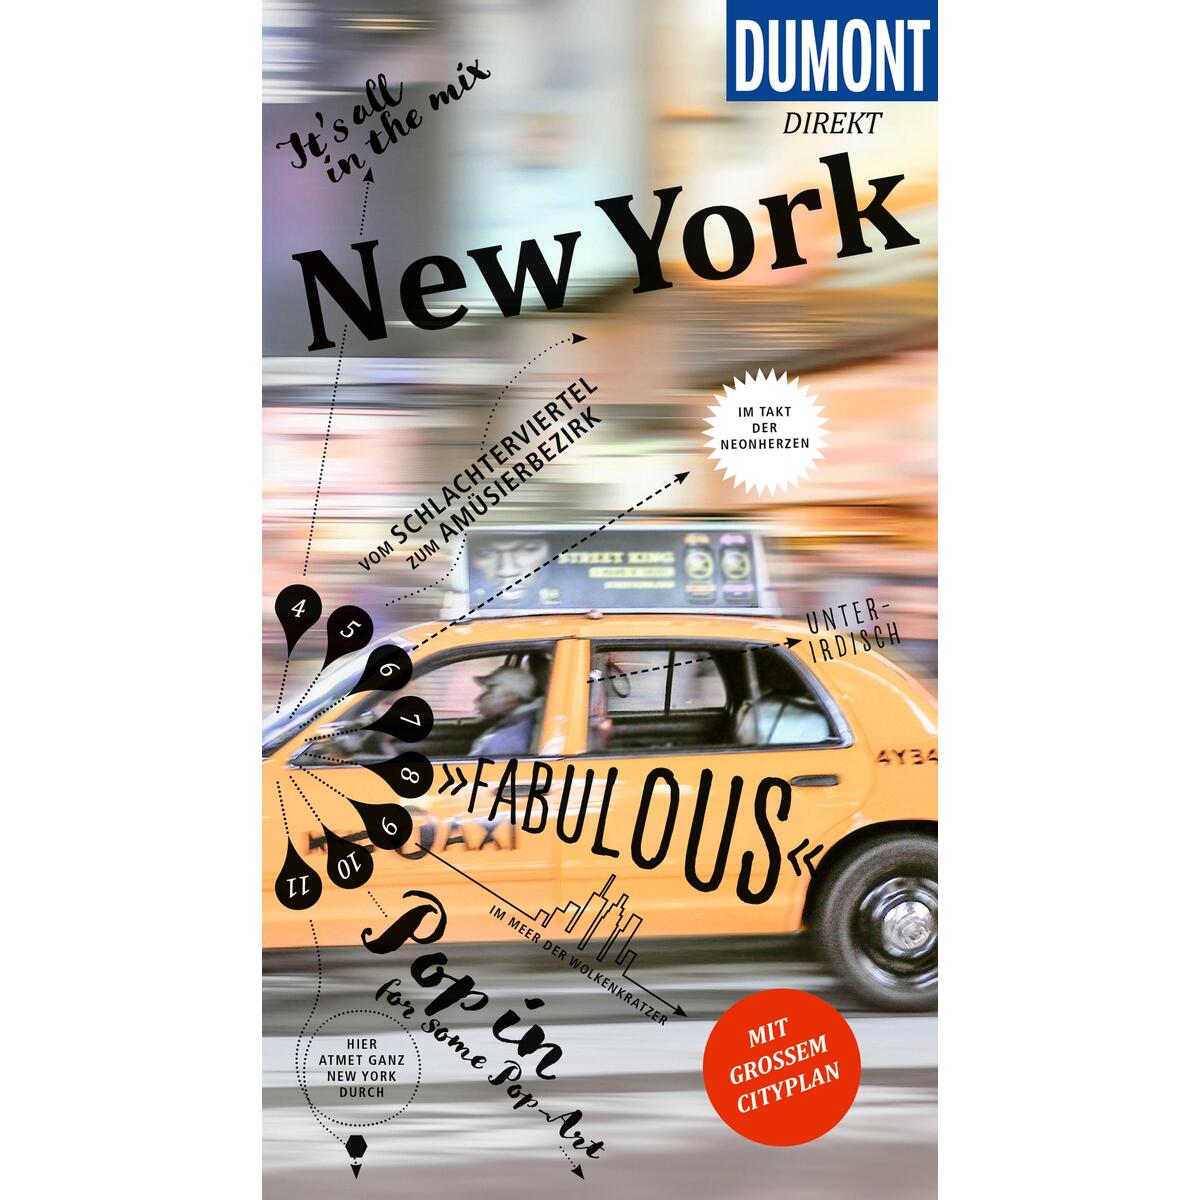 DuMont direkt Reiseführer New York von Dumont Reise Vlg GmbH + C